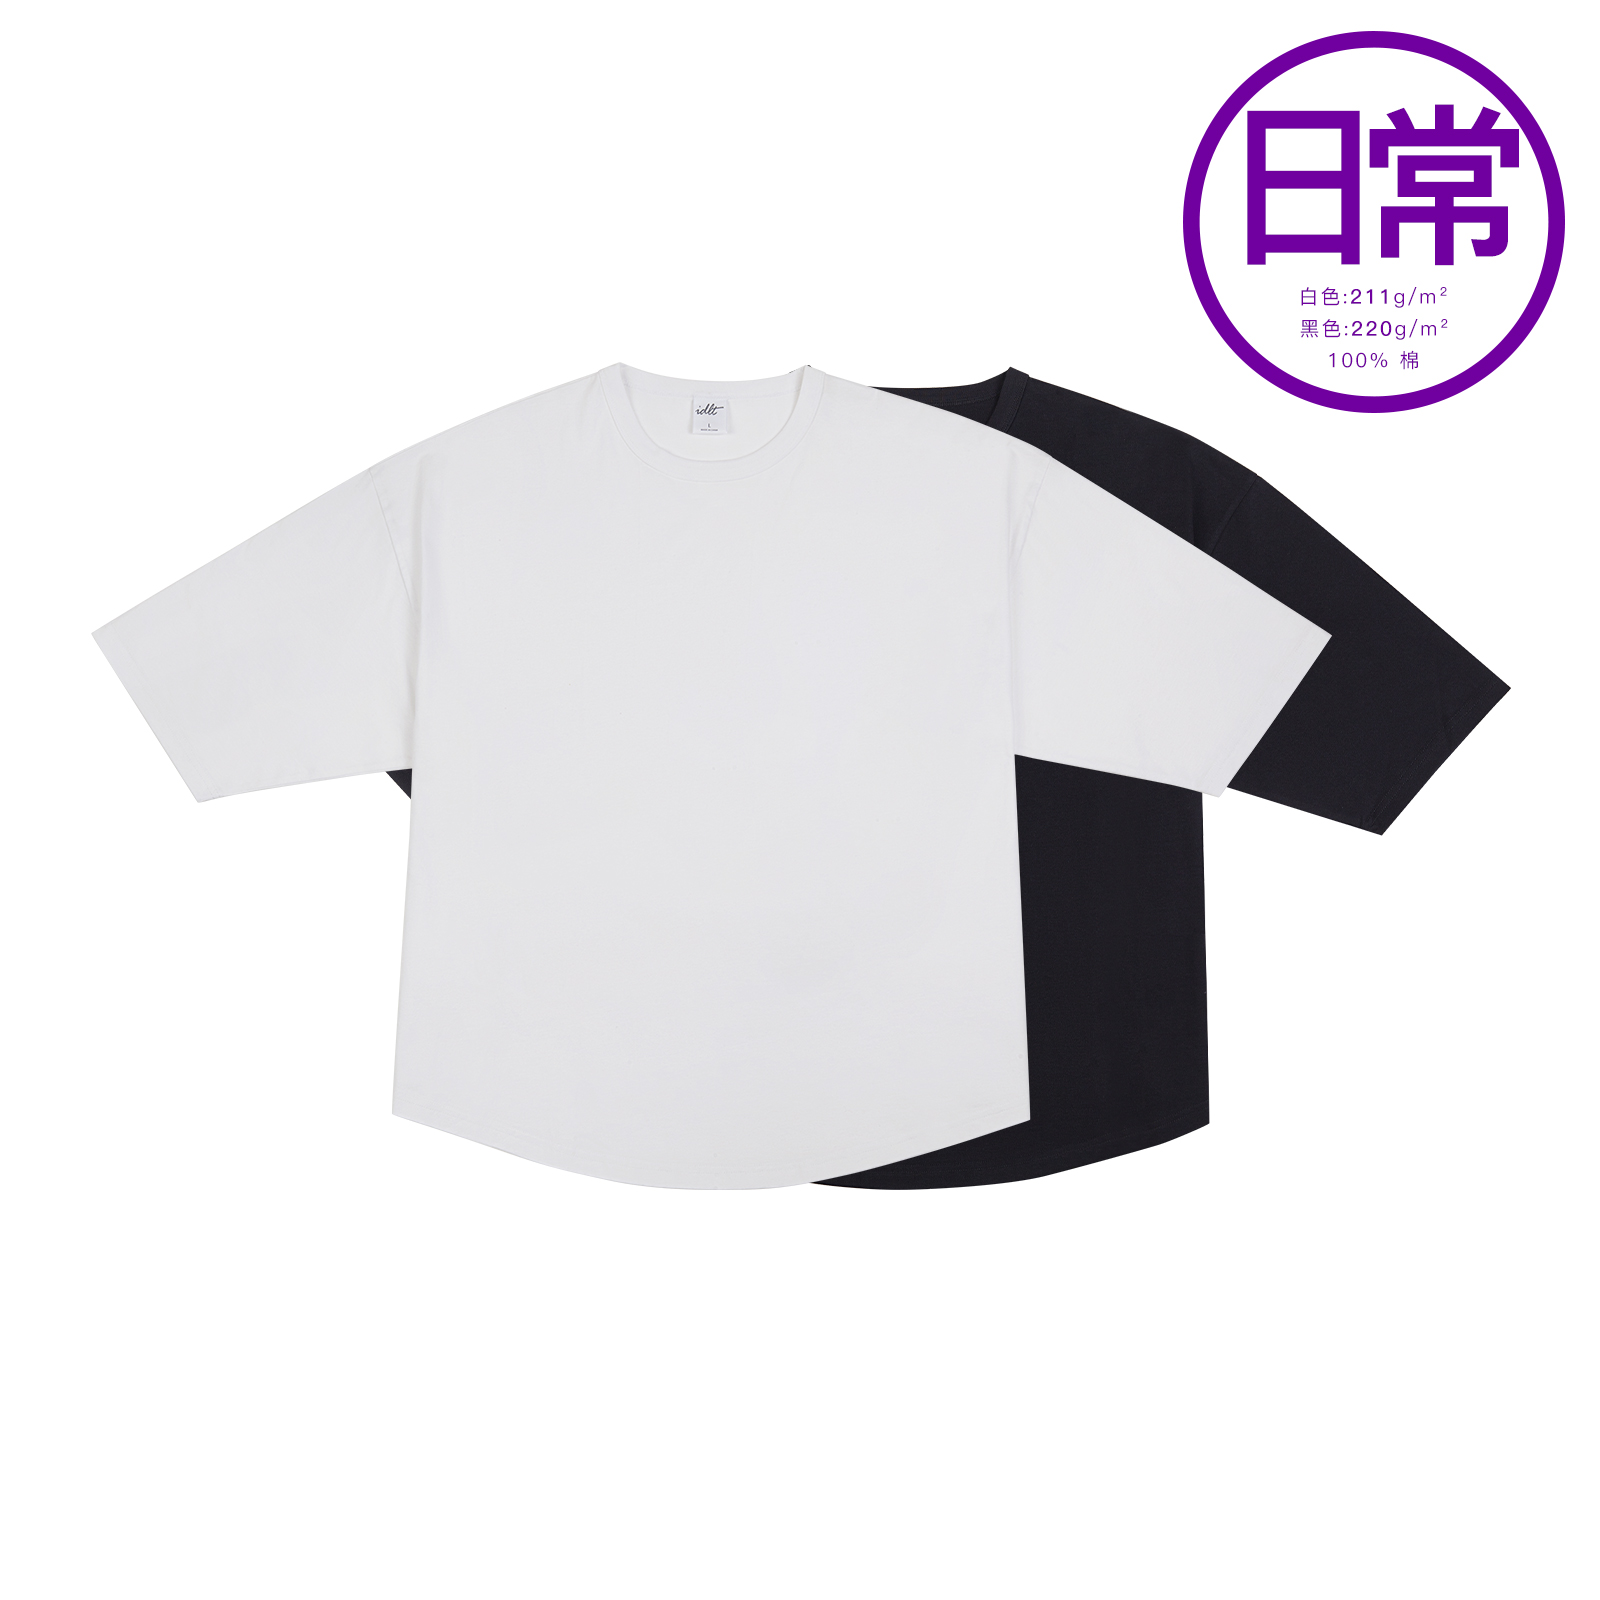 IDLT【宽松弧形】短袖 廓形长绒纯棉 街头百搭黑白色t恤基本款 潮